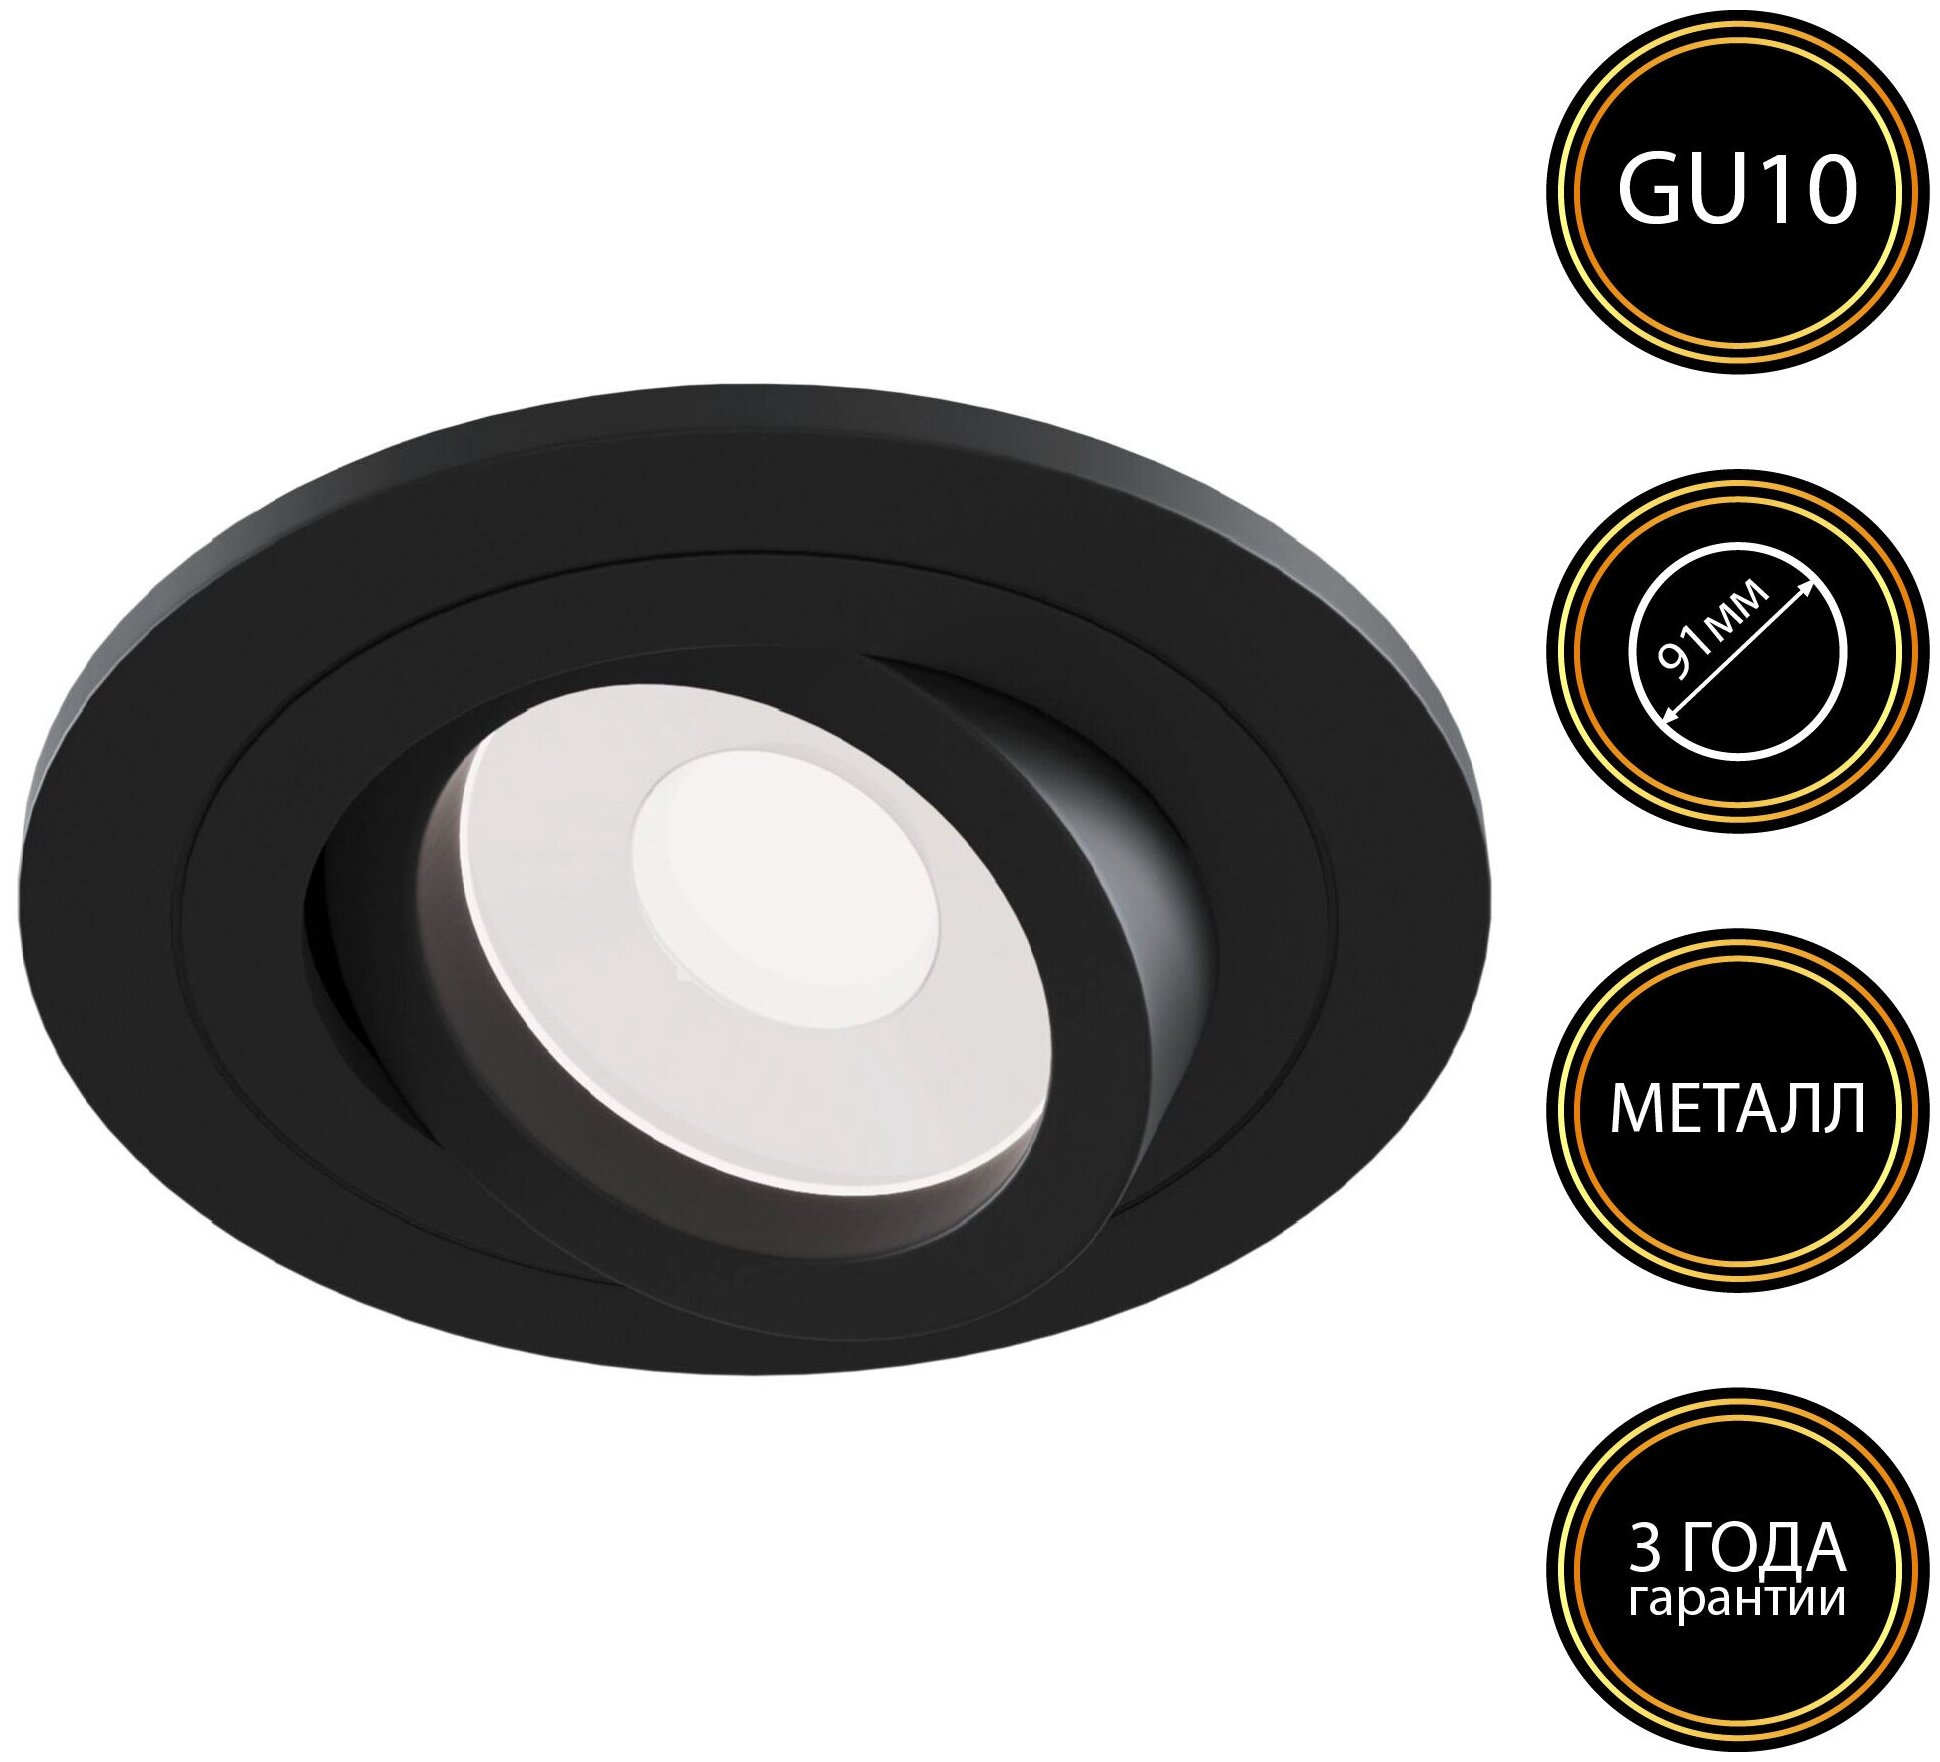 Встраиваемый точечный поворотный светильник MARS R1 цвет: черный материал металл цоколь GU10